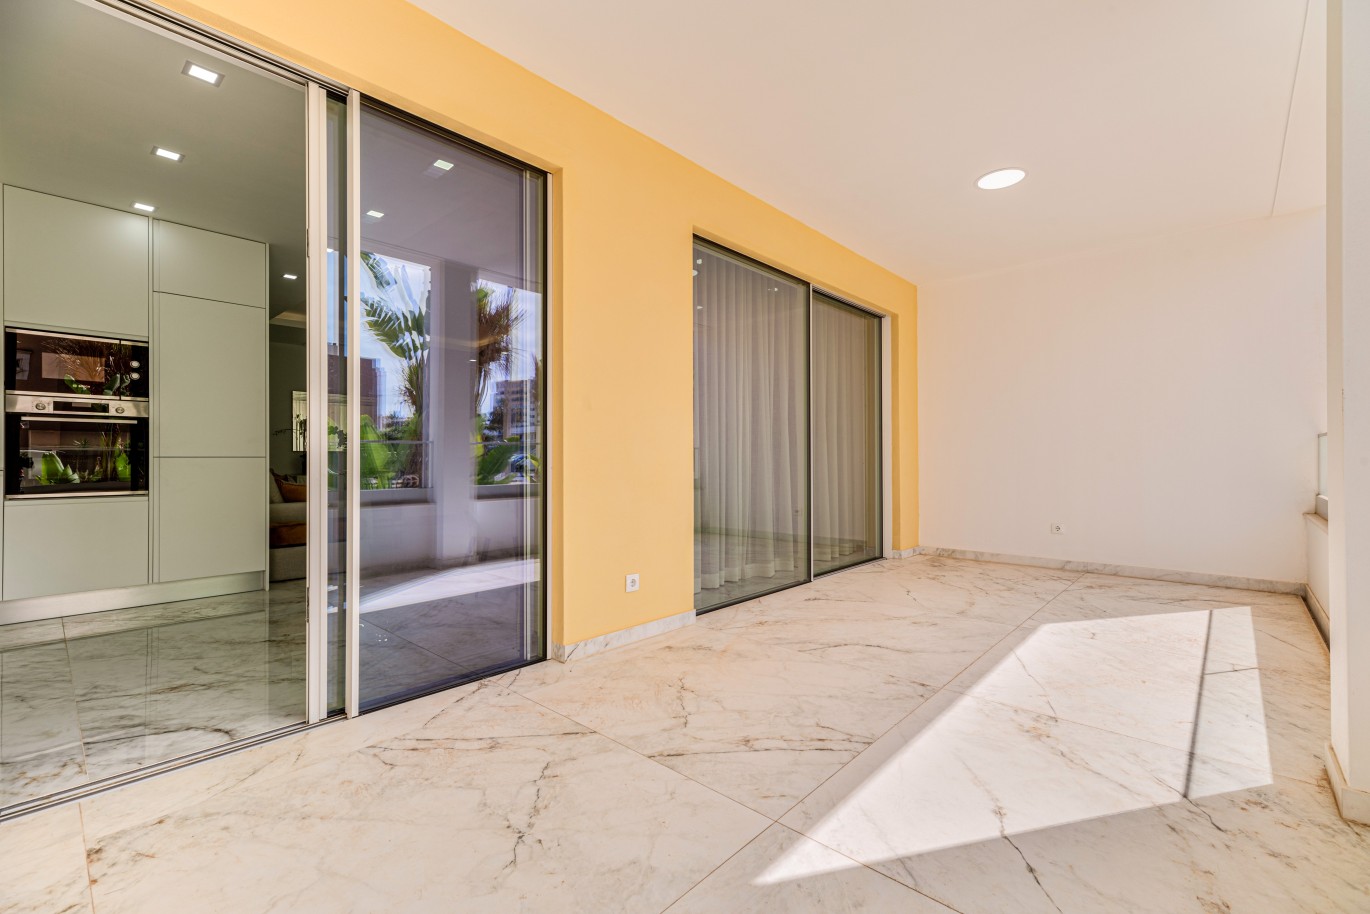 Verkauf einer Wohnung im Bau, mit Terrasse, Lagos, Algarve, Portugal_238563